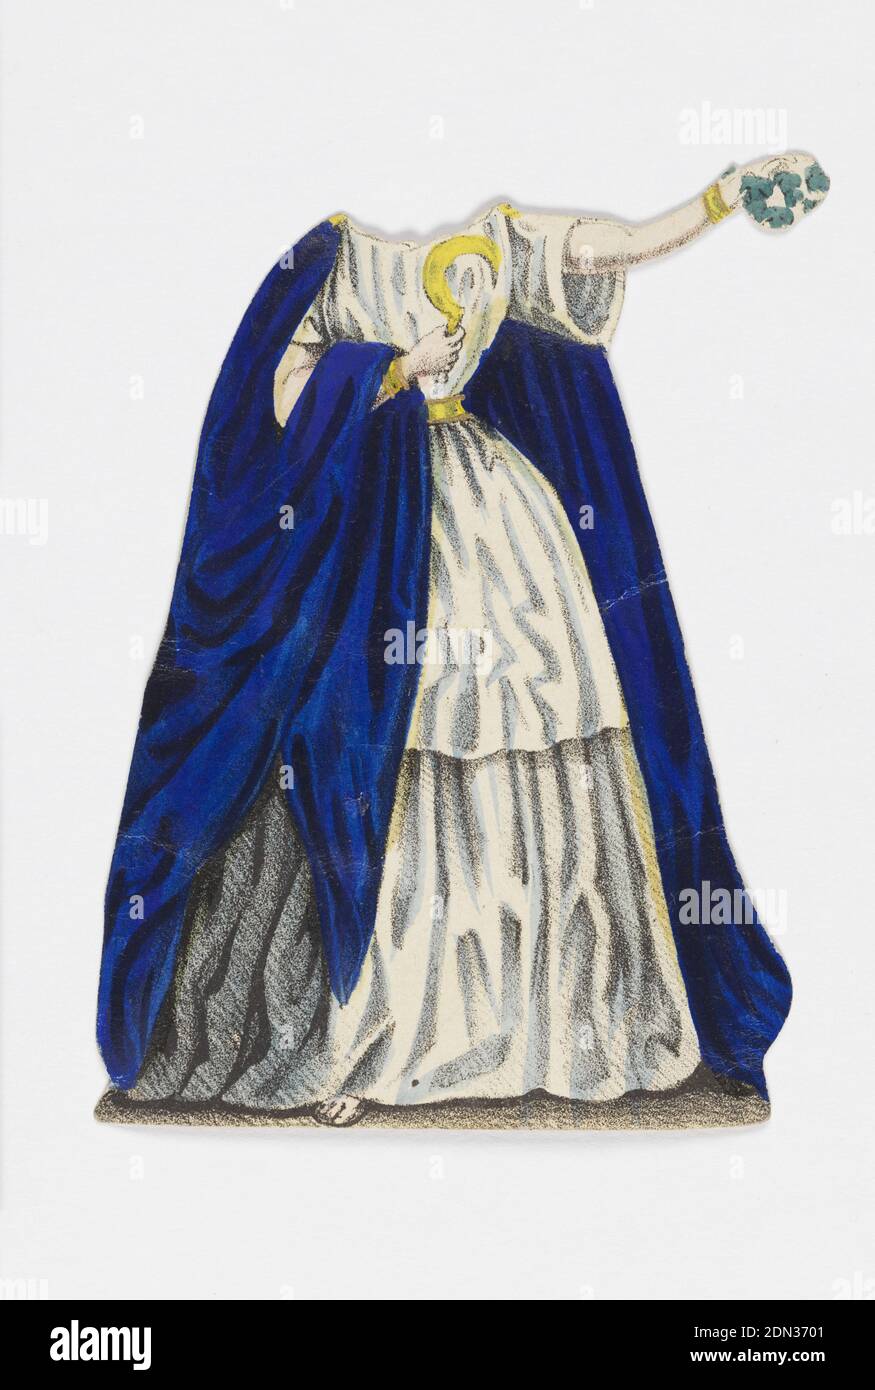 Jenny Lind Paper Doll Costume, norma dell'opera 'norma', litografia su carta di wove bianca, costume di bambola di carta per la figura di Jenny Lind che rappresenta il personaggio norma dell'opera norma., progettato per essere posizionato sopra la bambola., Europa, ca. 1850, giocattoli e giochi, Stampa Foto Stock